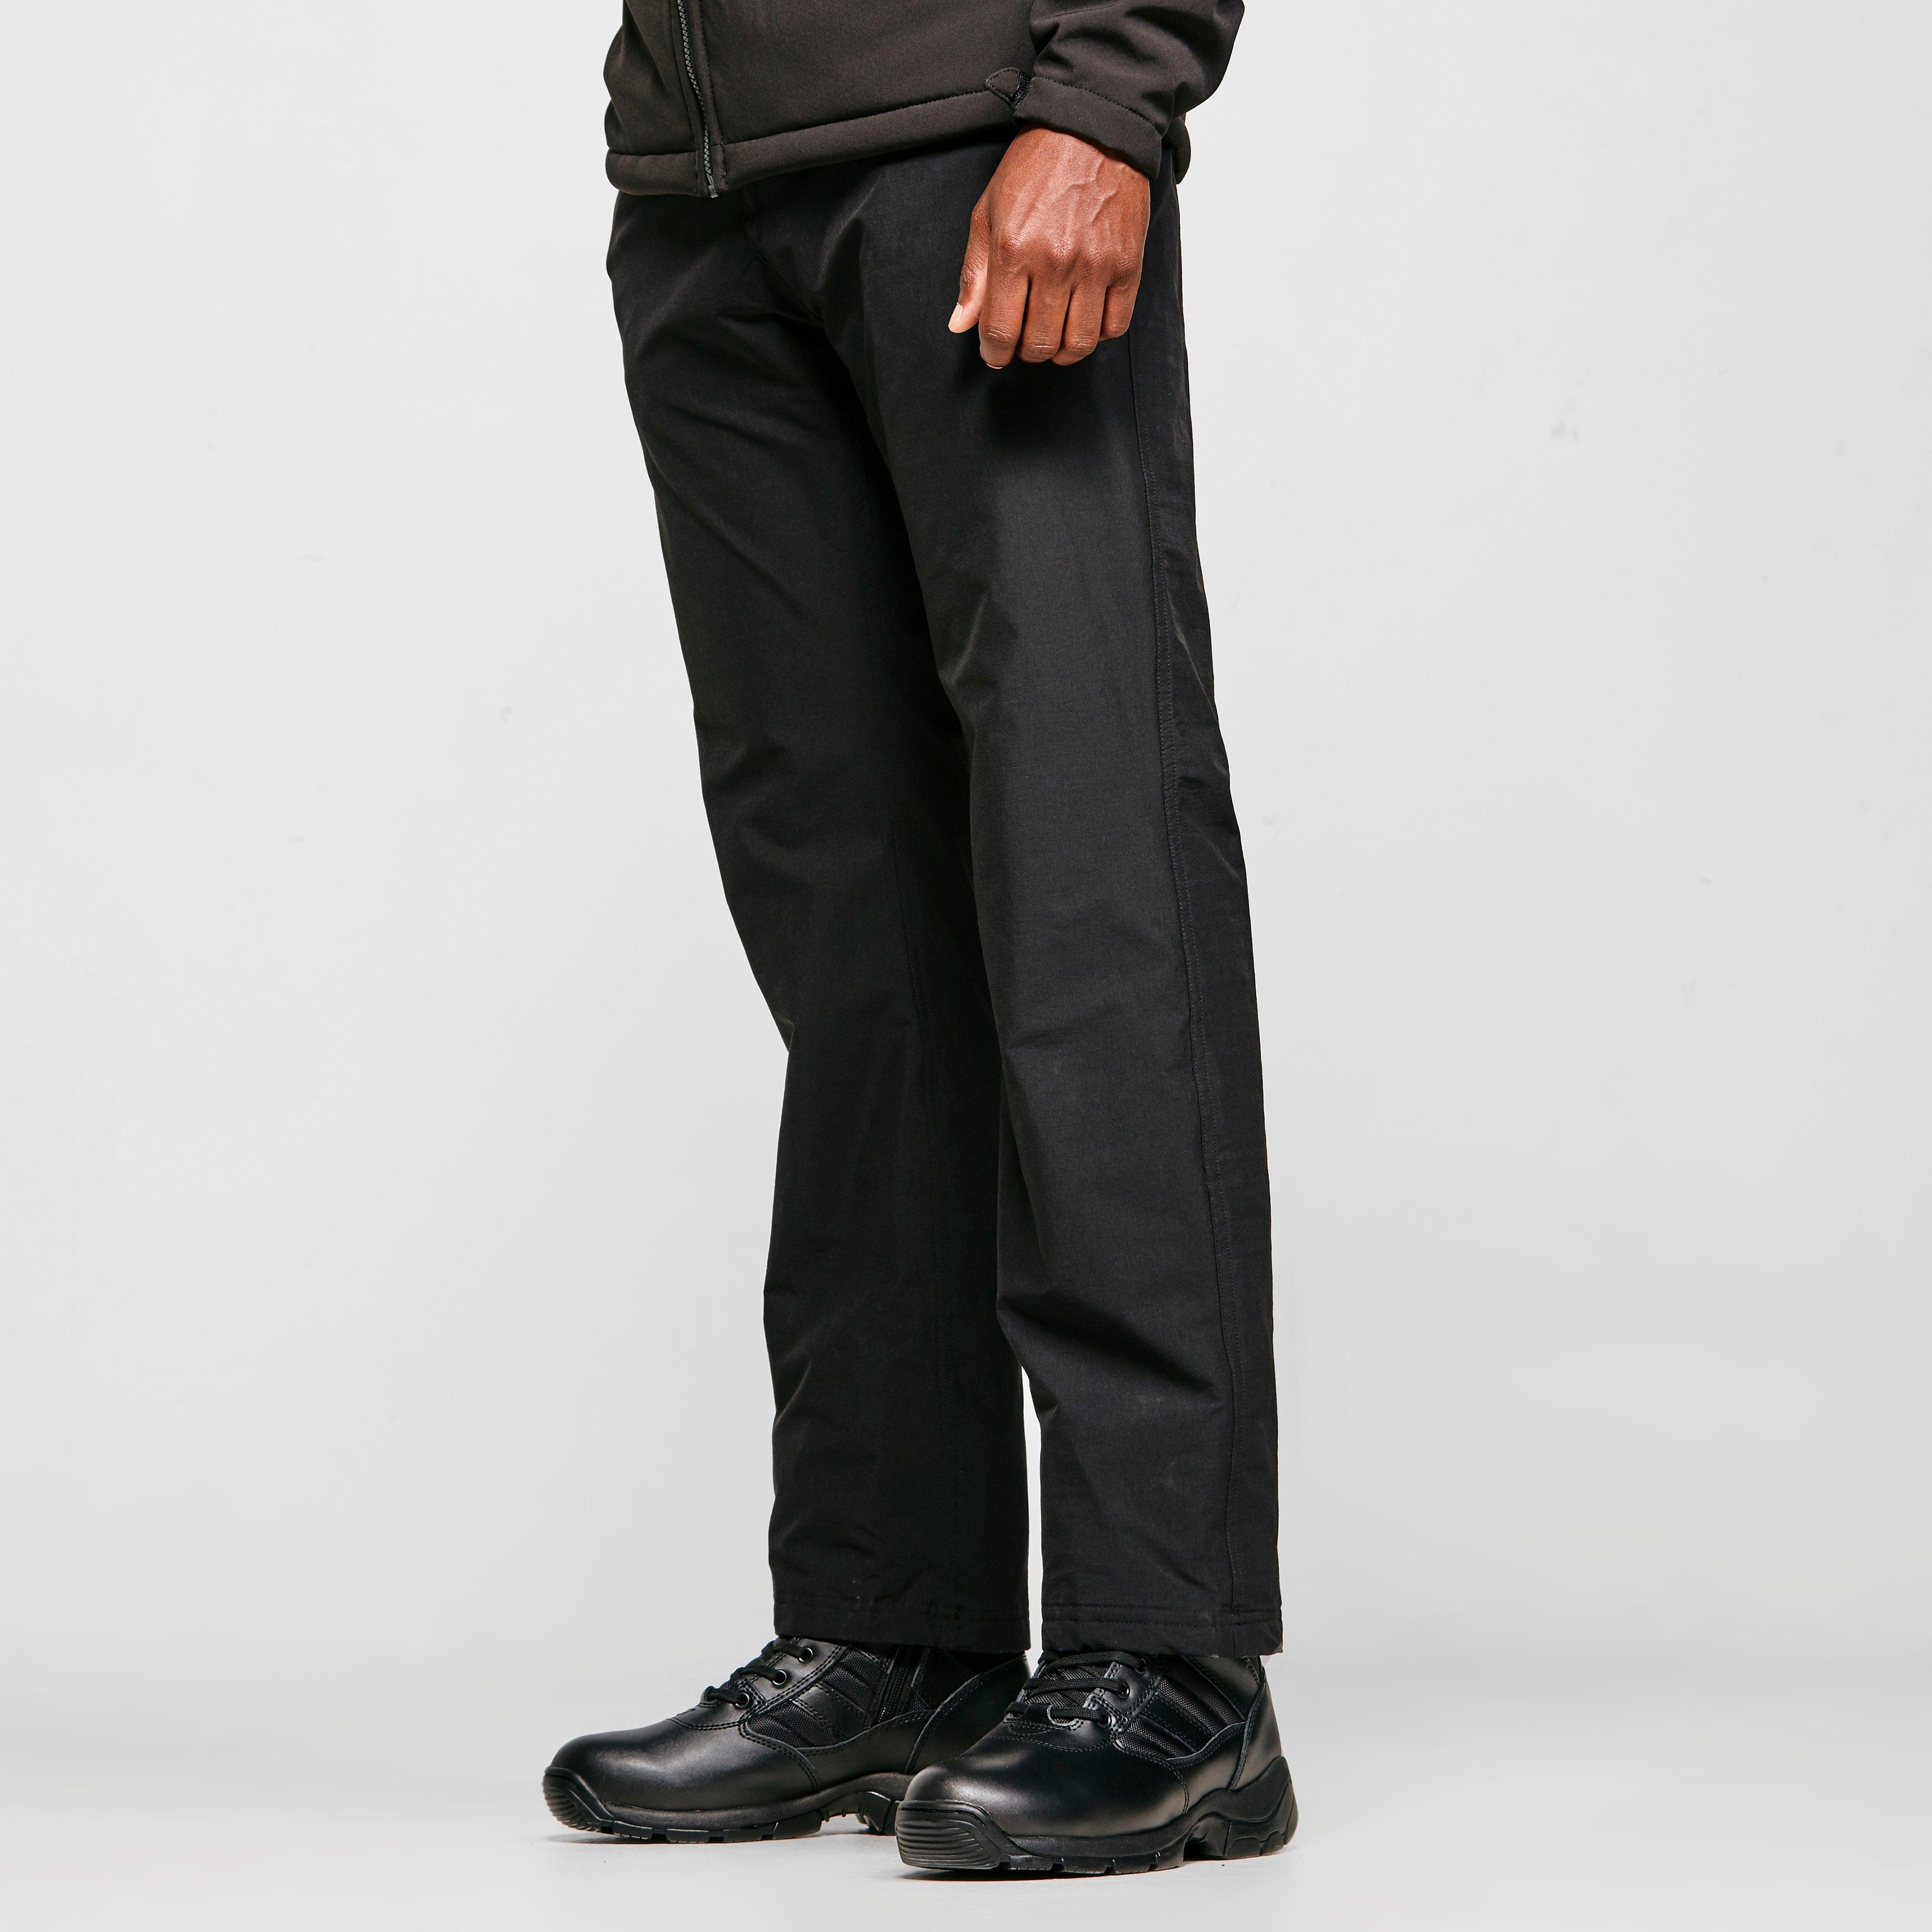 Craghoppers Mens Kiwi Pro Waterproof Trousers - Black/black  Black/black